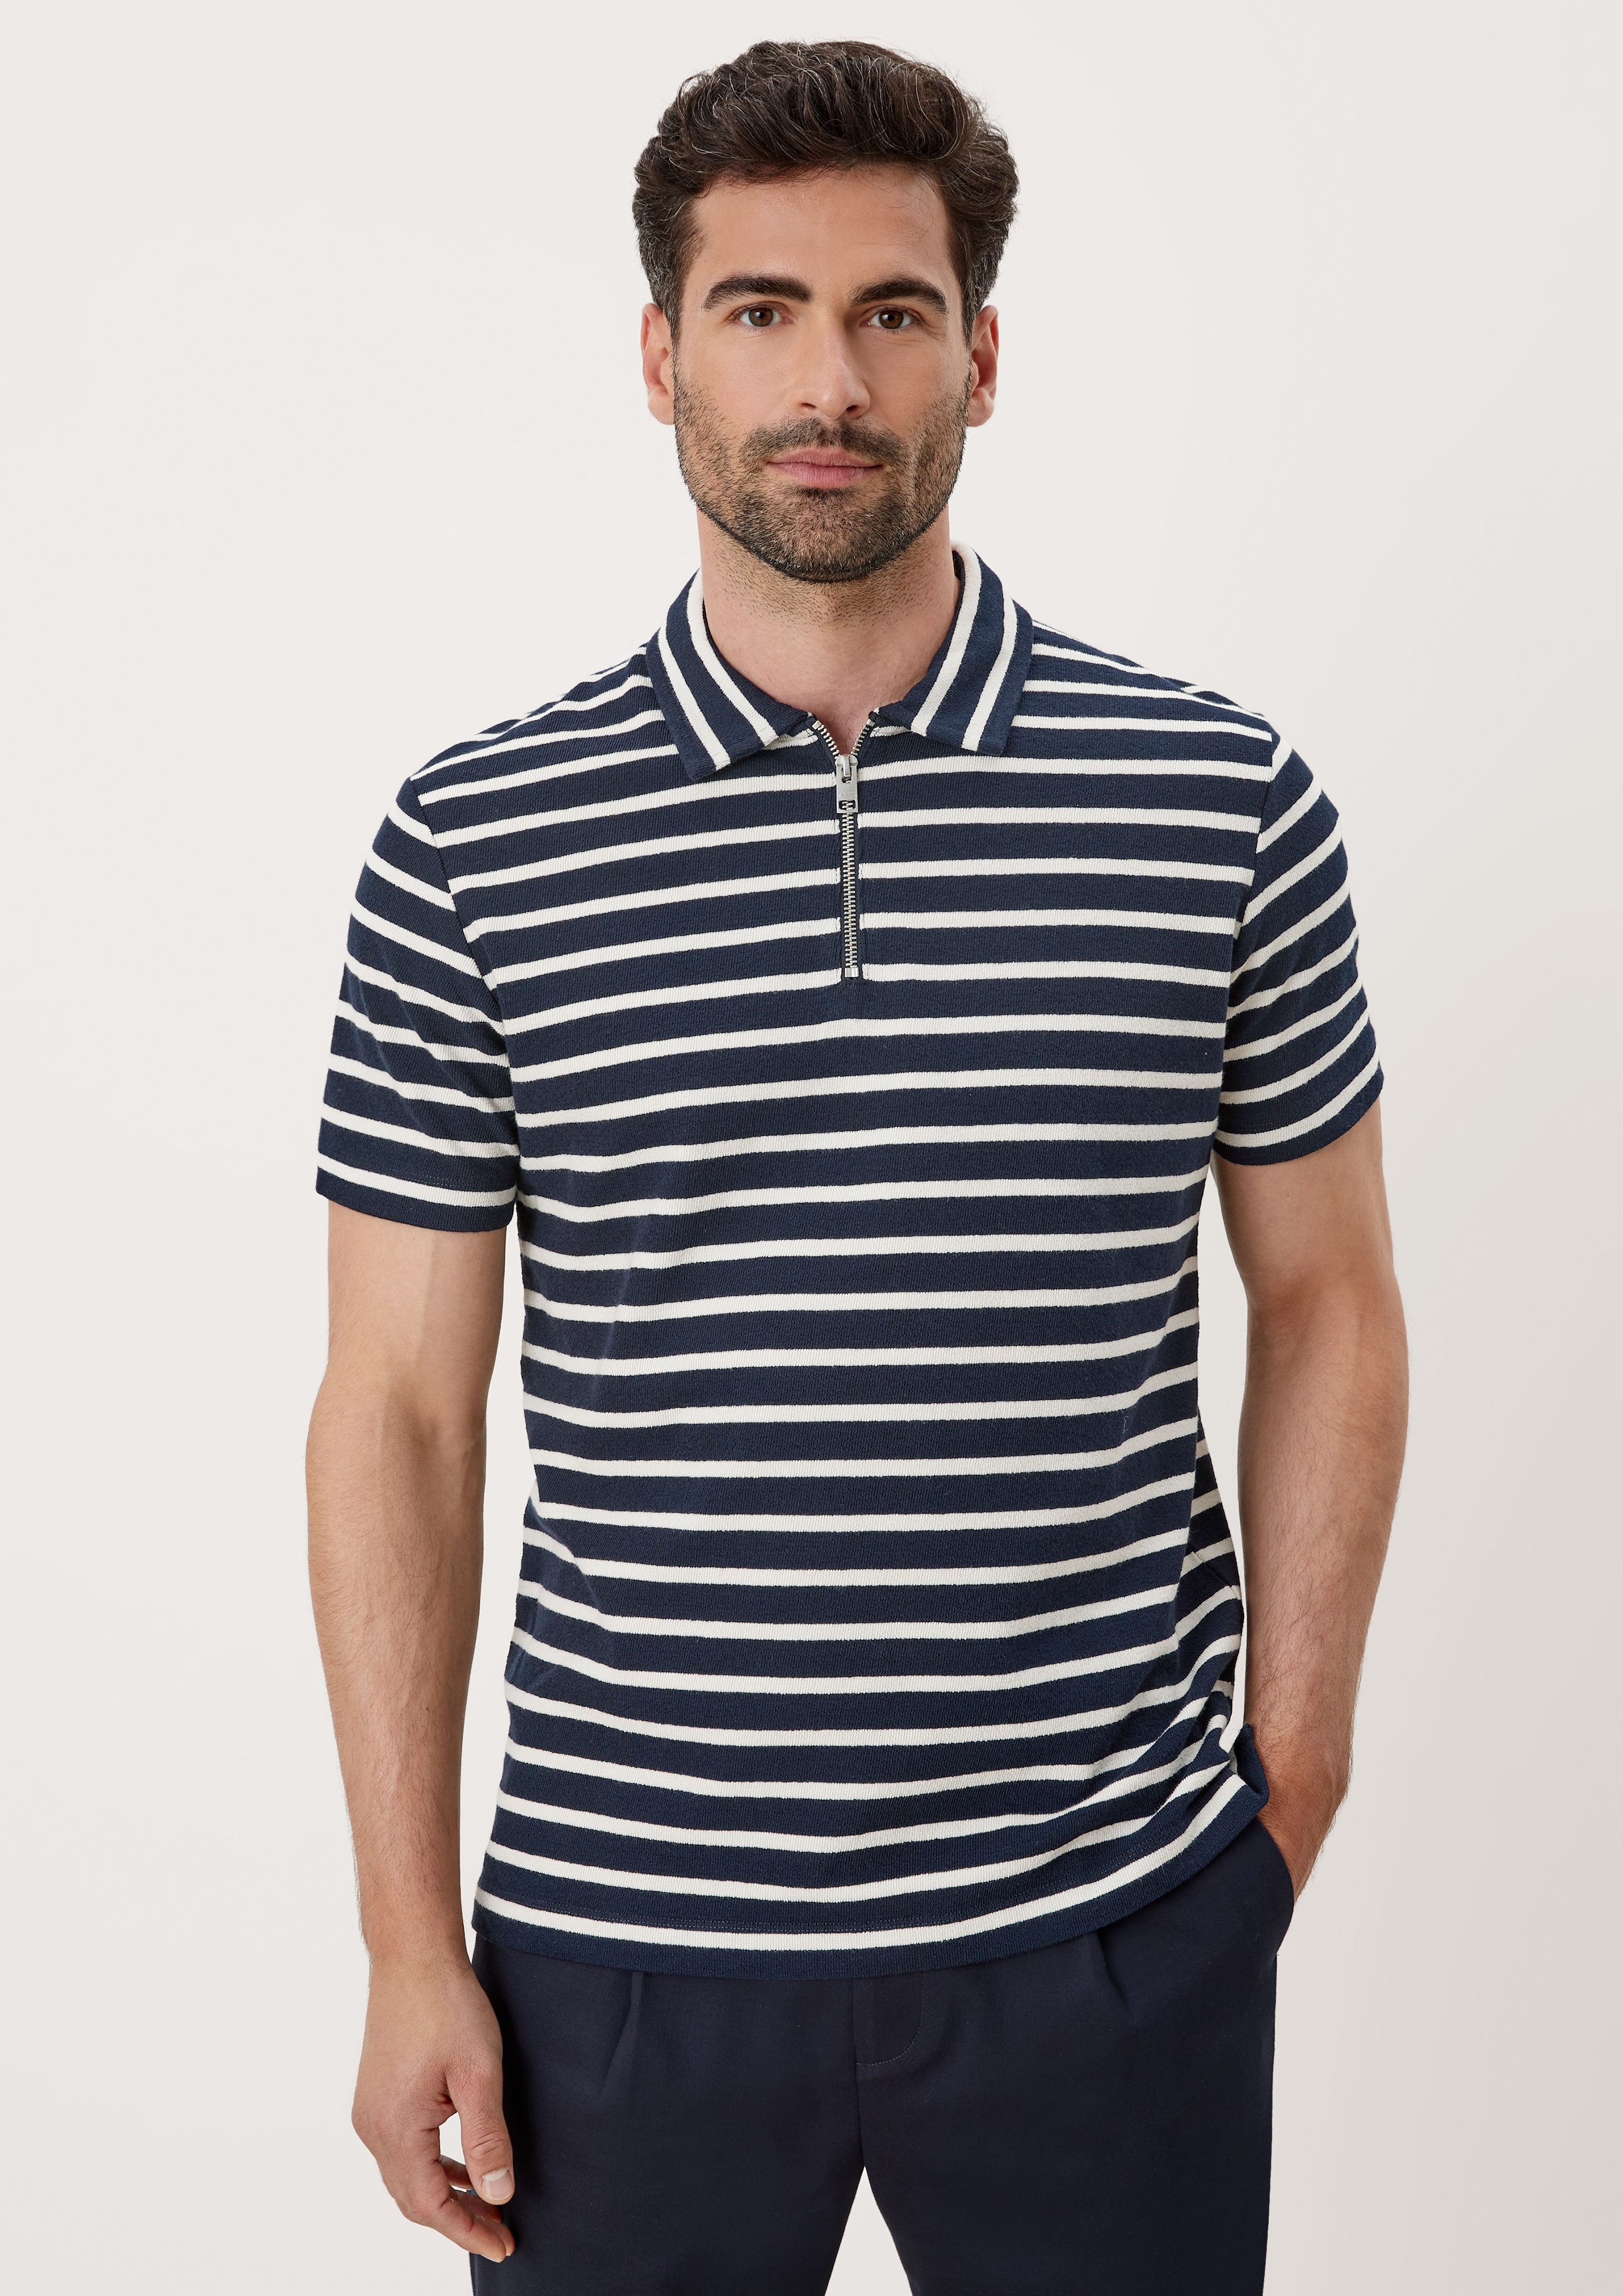 s.Oliver Kurzarmshirt Poloshirt im Streifendesign navy stripes